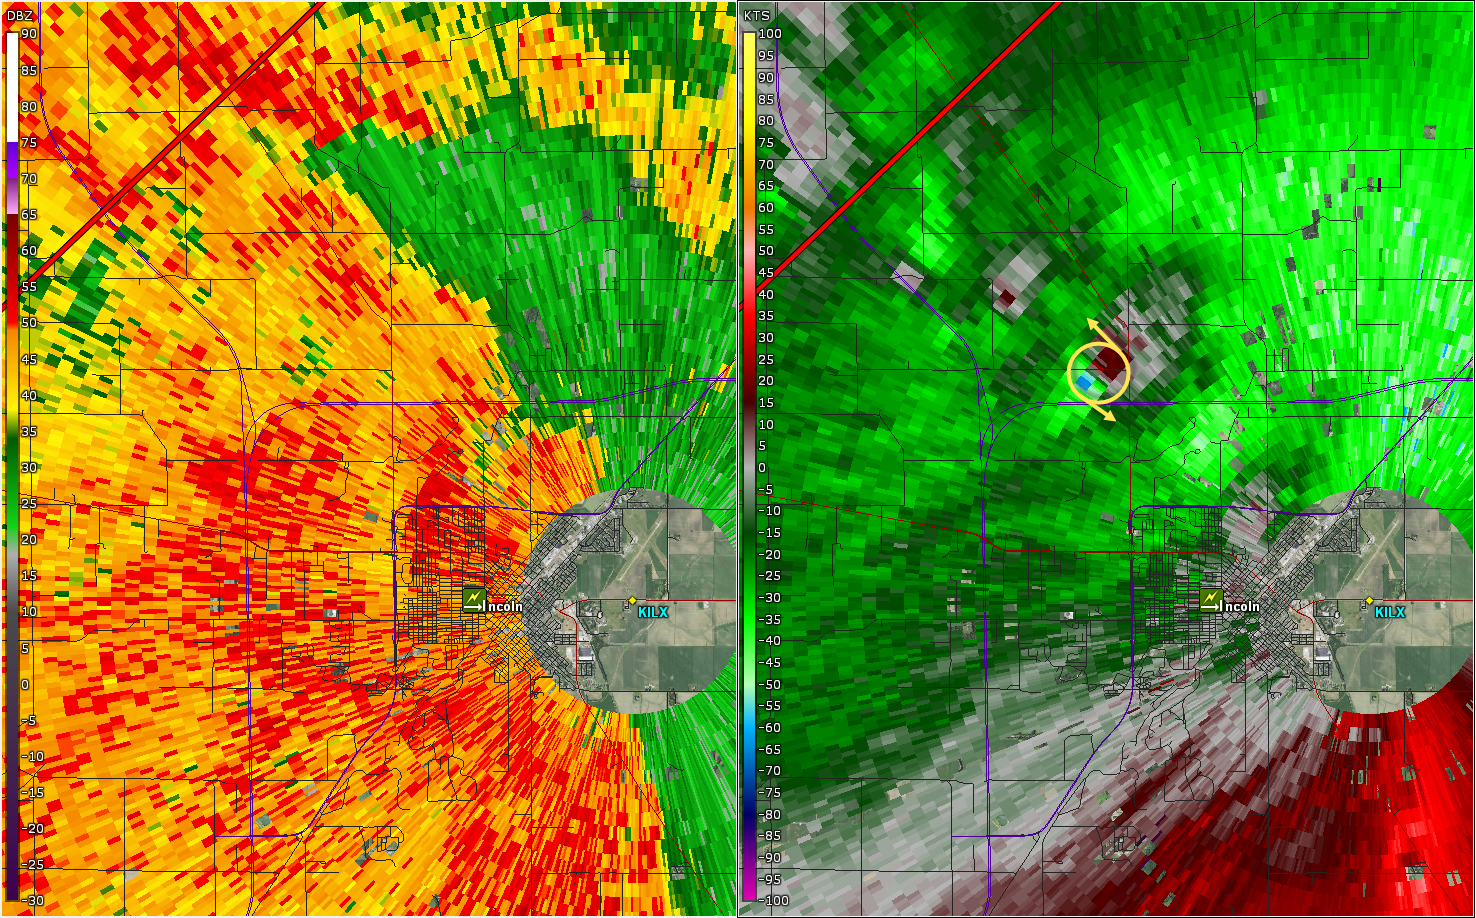 Radar image of the tornado in Lincoln